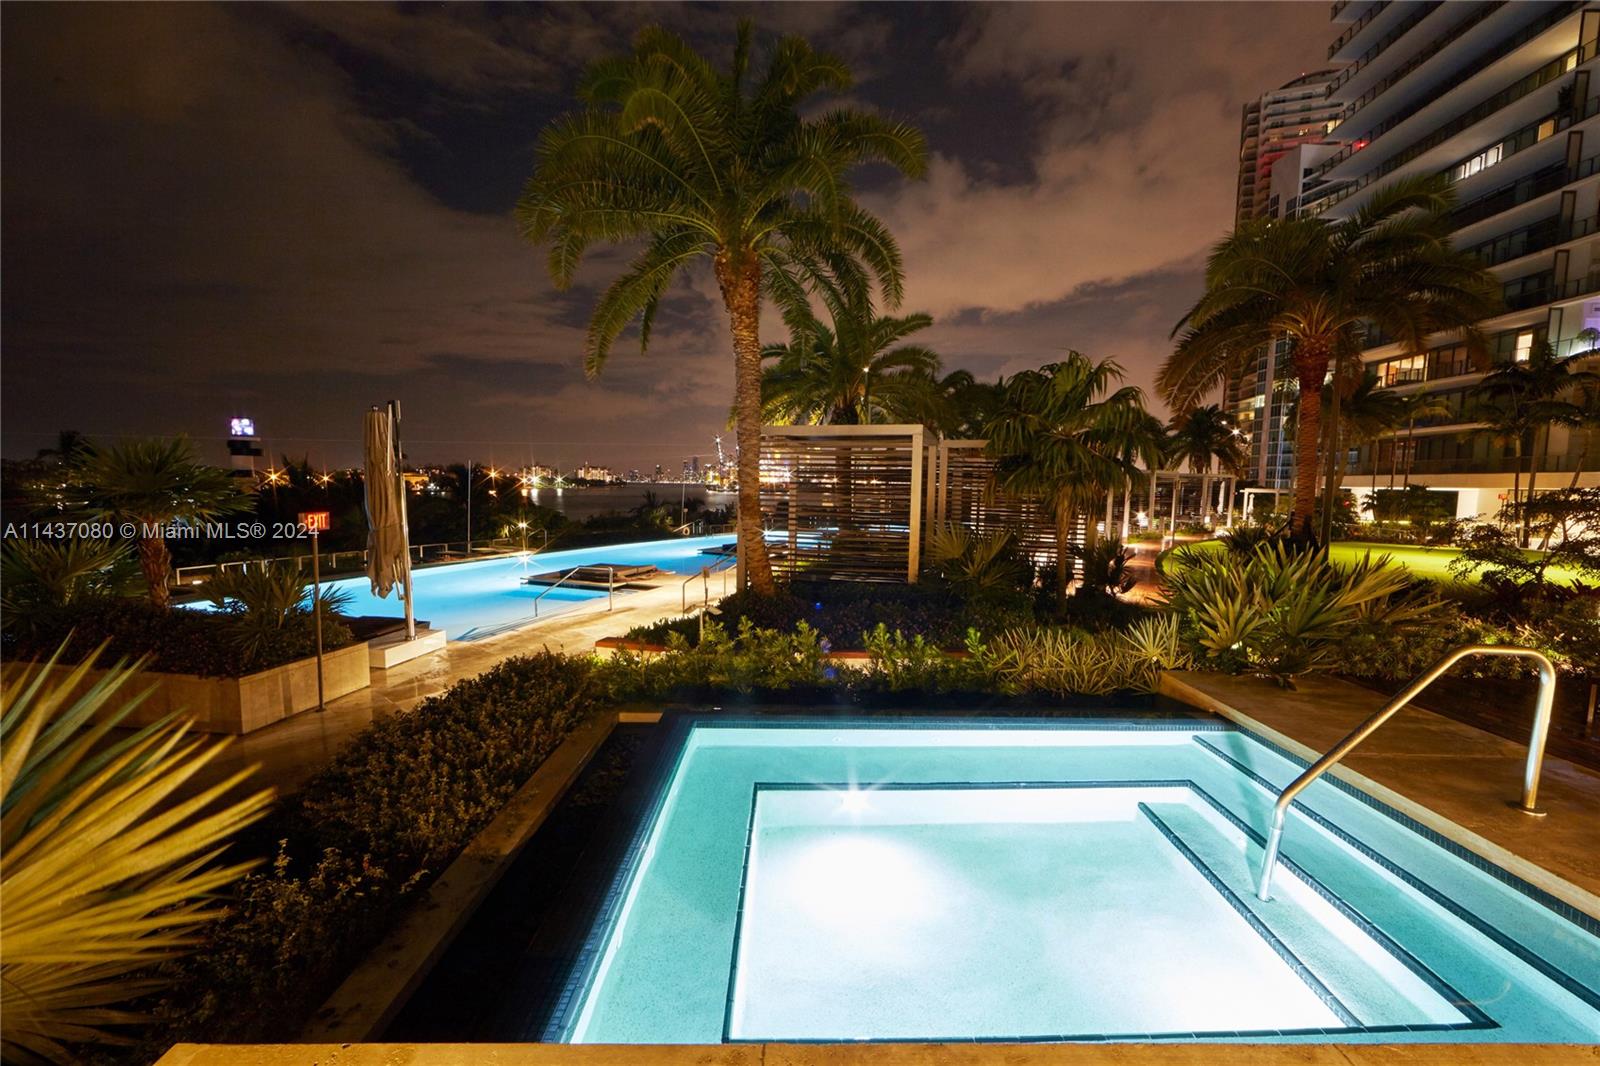 Residential, Miami Beach, Florida image 46